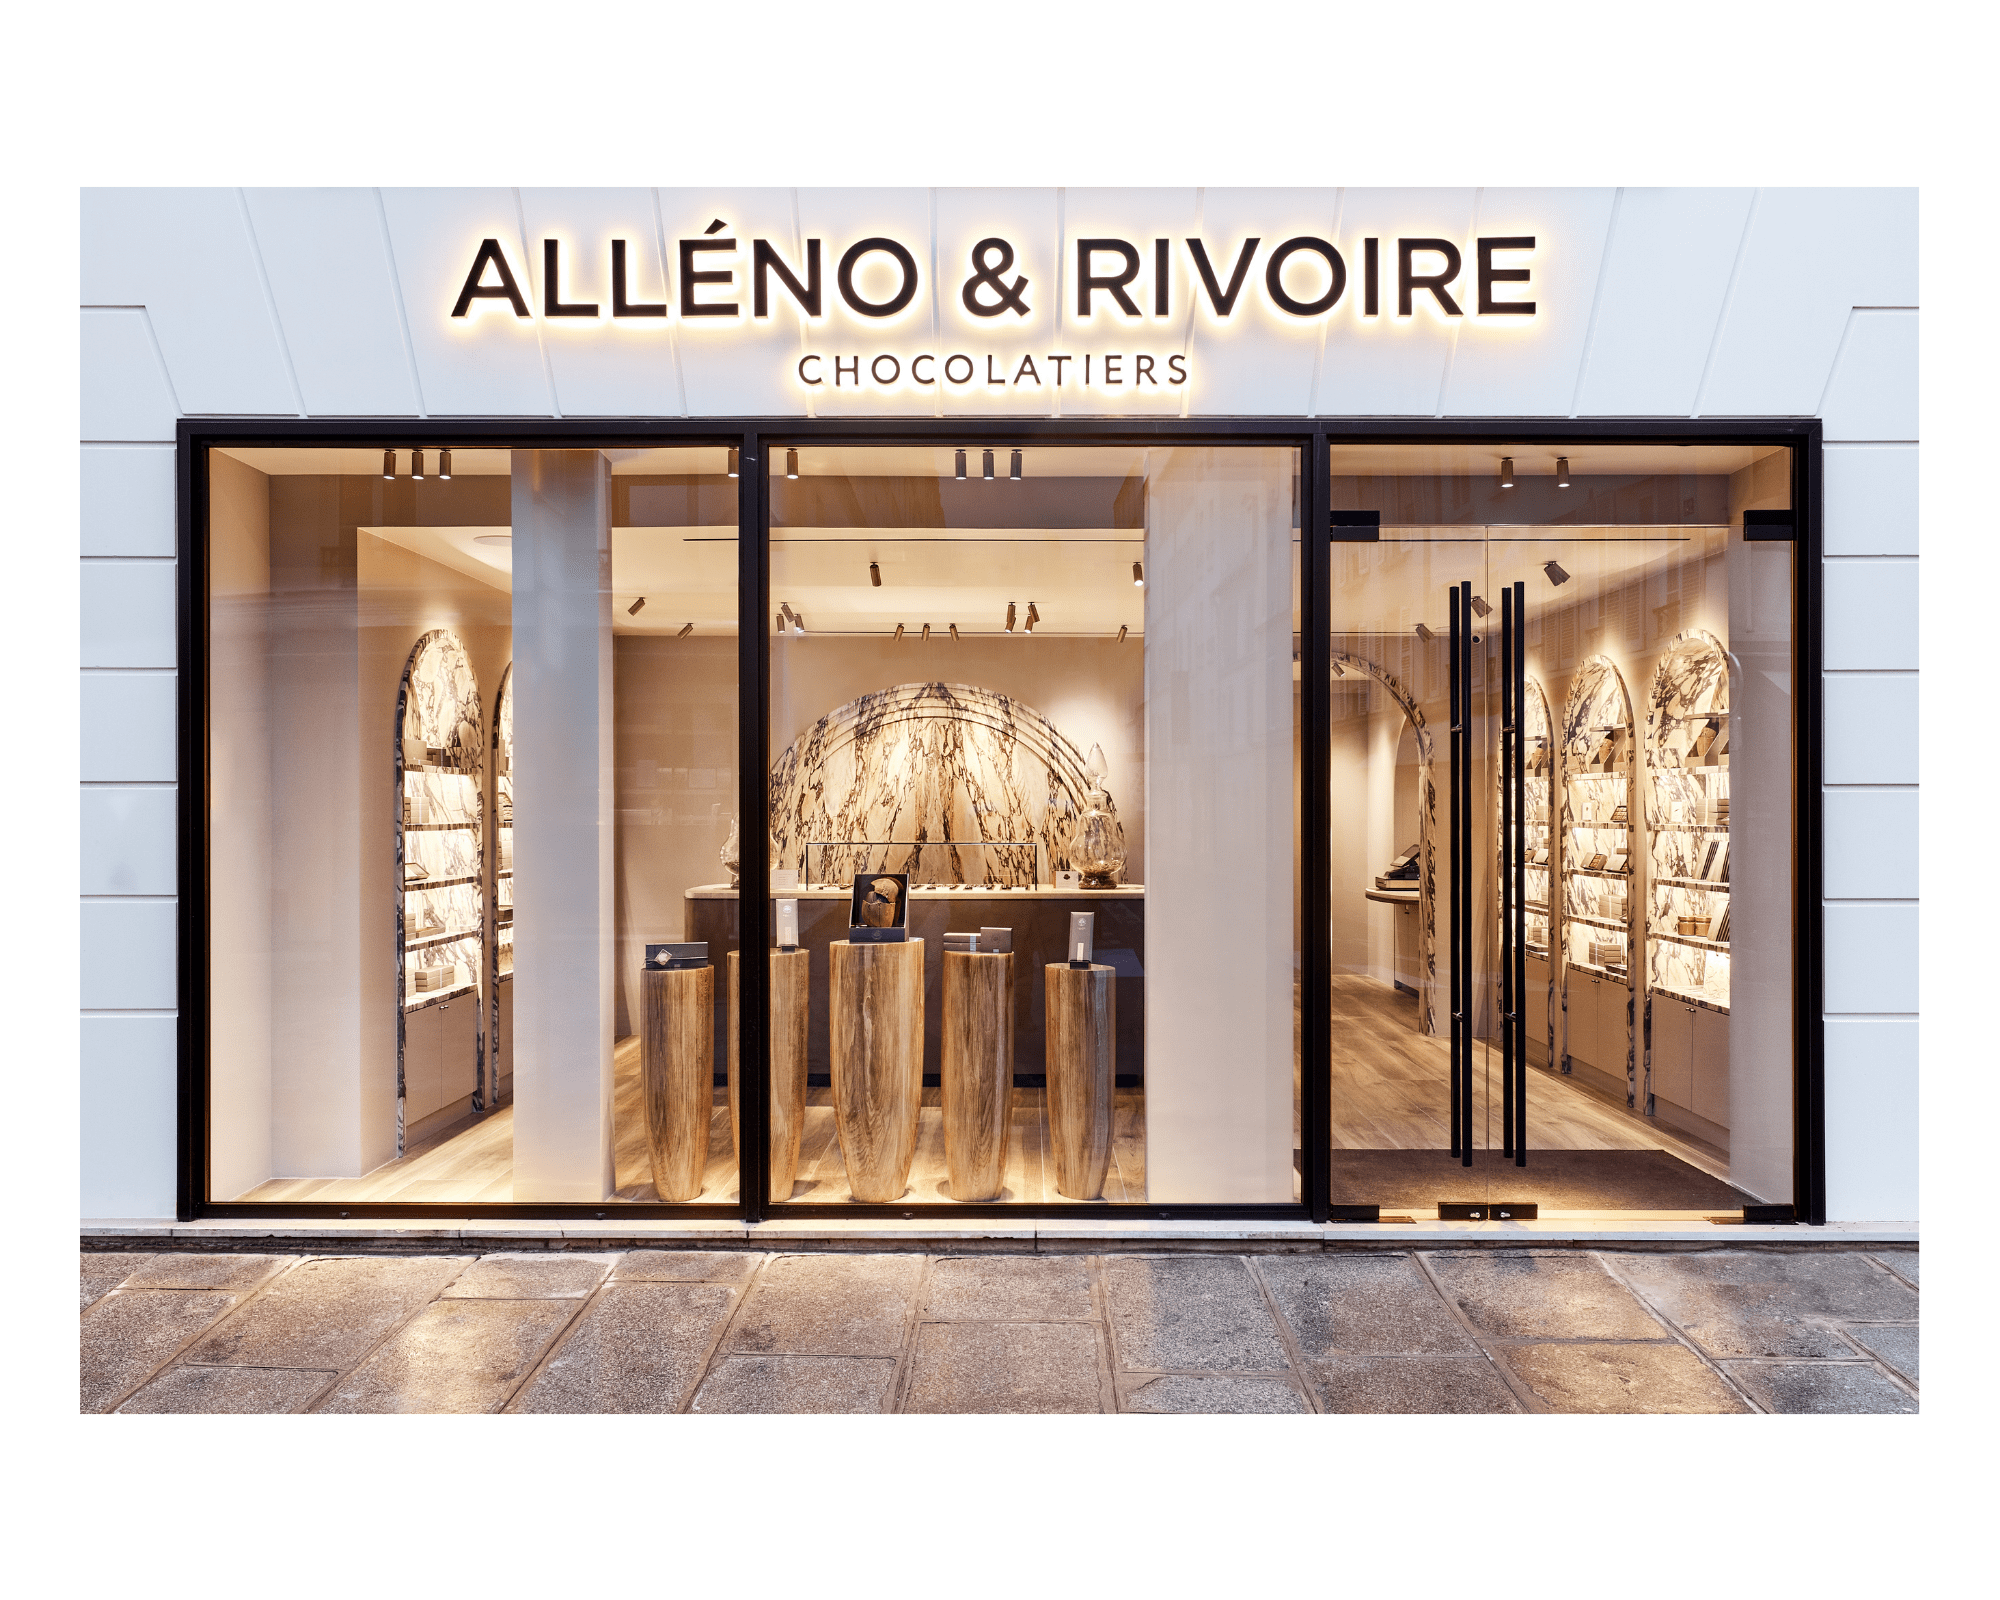 Lancement de la e-boutique Alléno & Rivoire